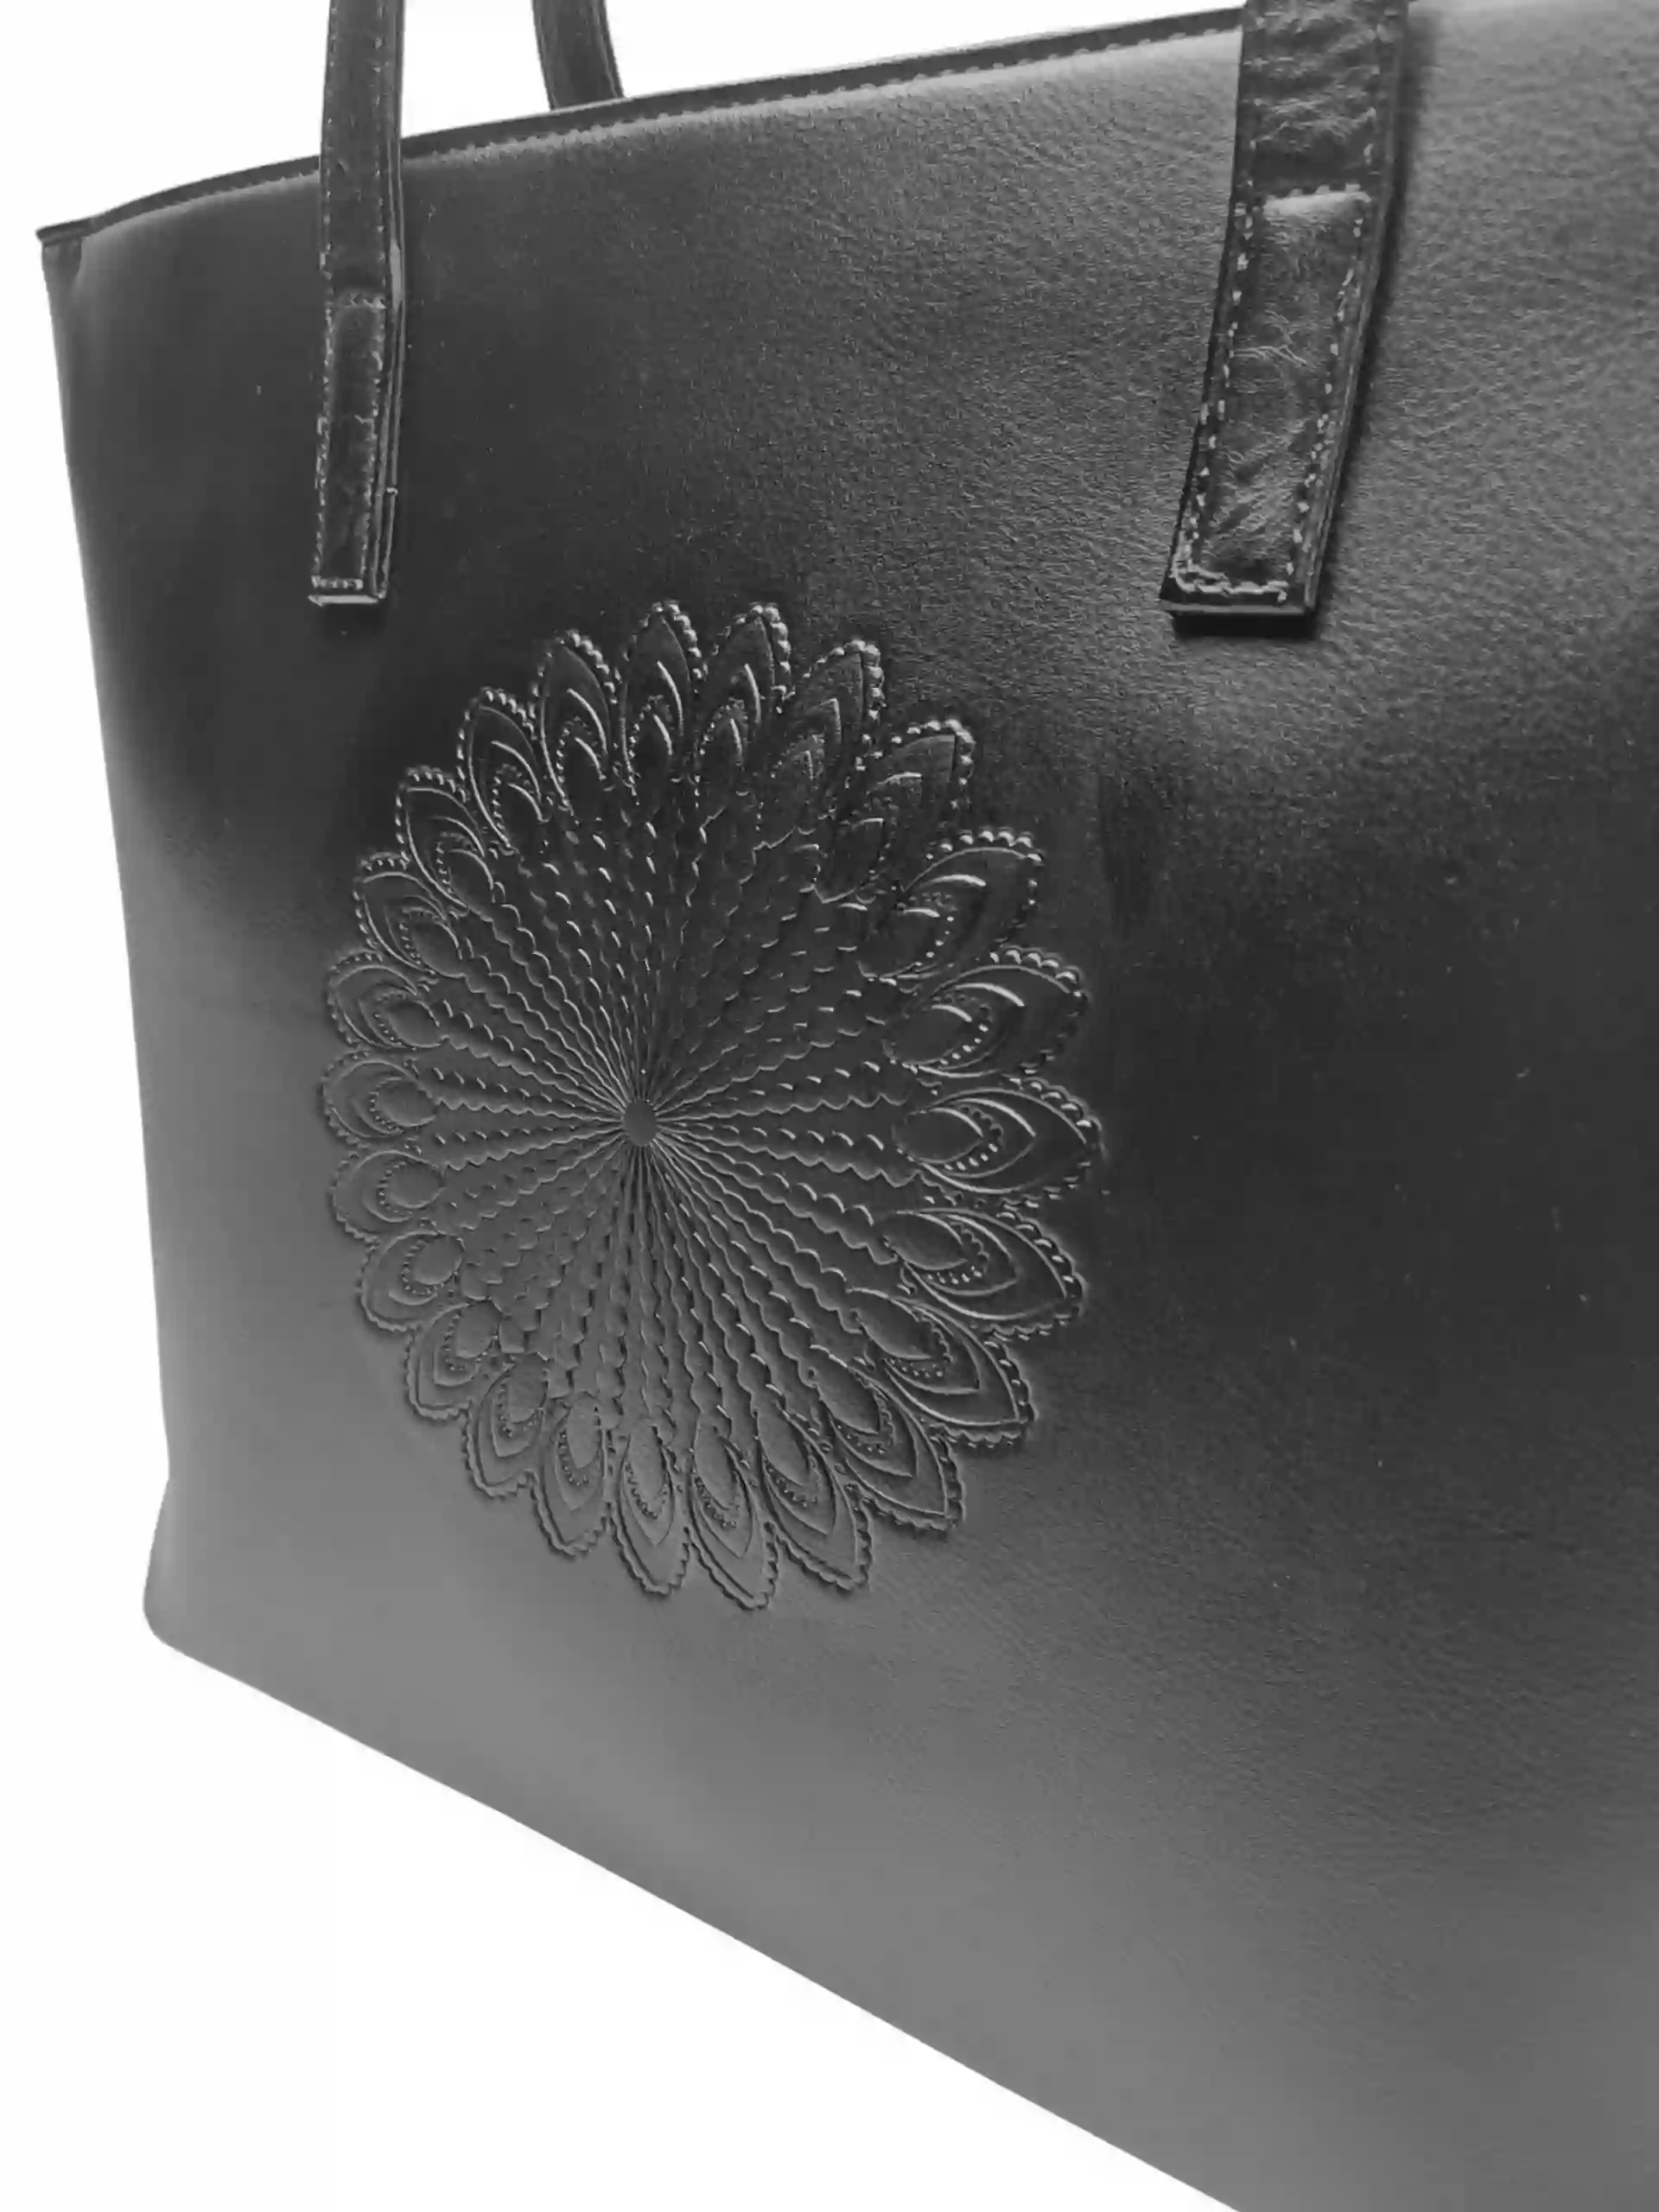 Černá dámská kabelka přes rameno se vzorem, Tapple, H17409N, detail zadní strany kabelky